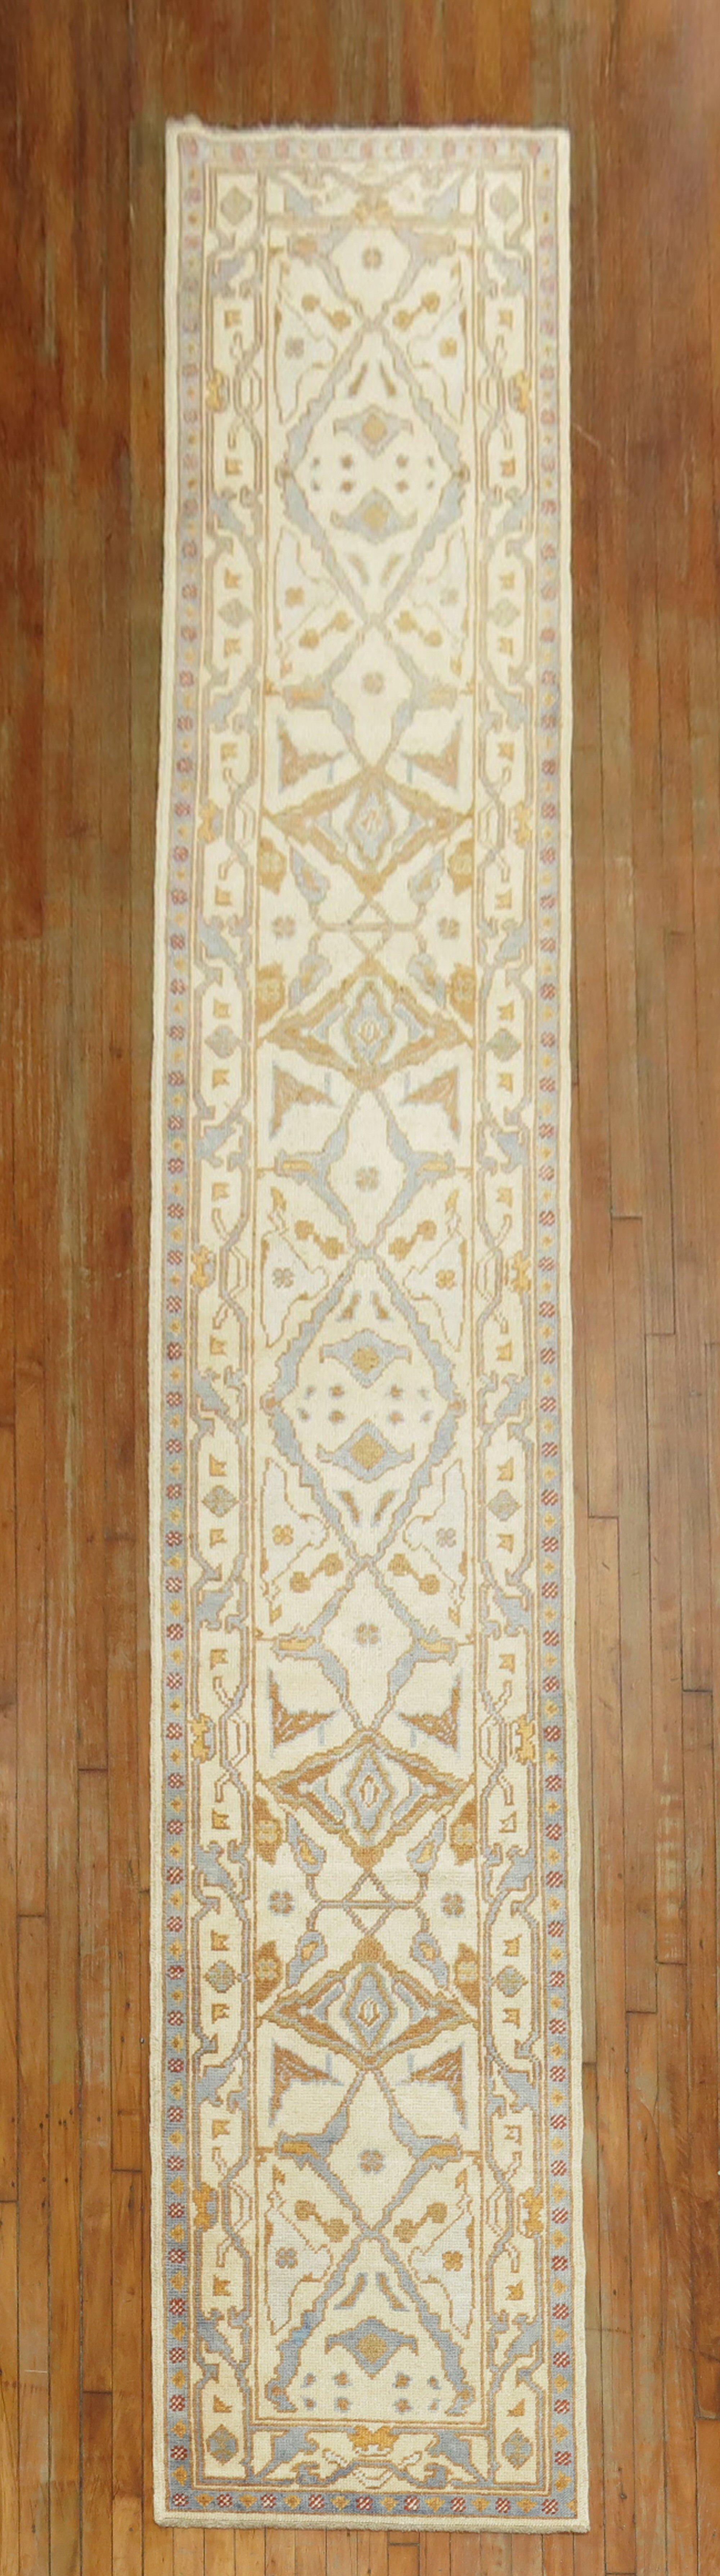 Reproduction d'une pièce unique du début du 21e siècle d'un tapis de course turc Oushak étroit et long

Mesures : 2'8'' x 16'8''.